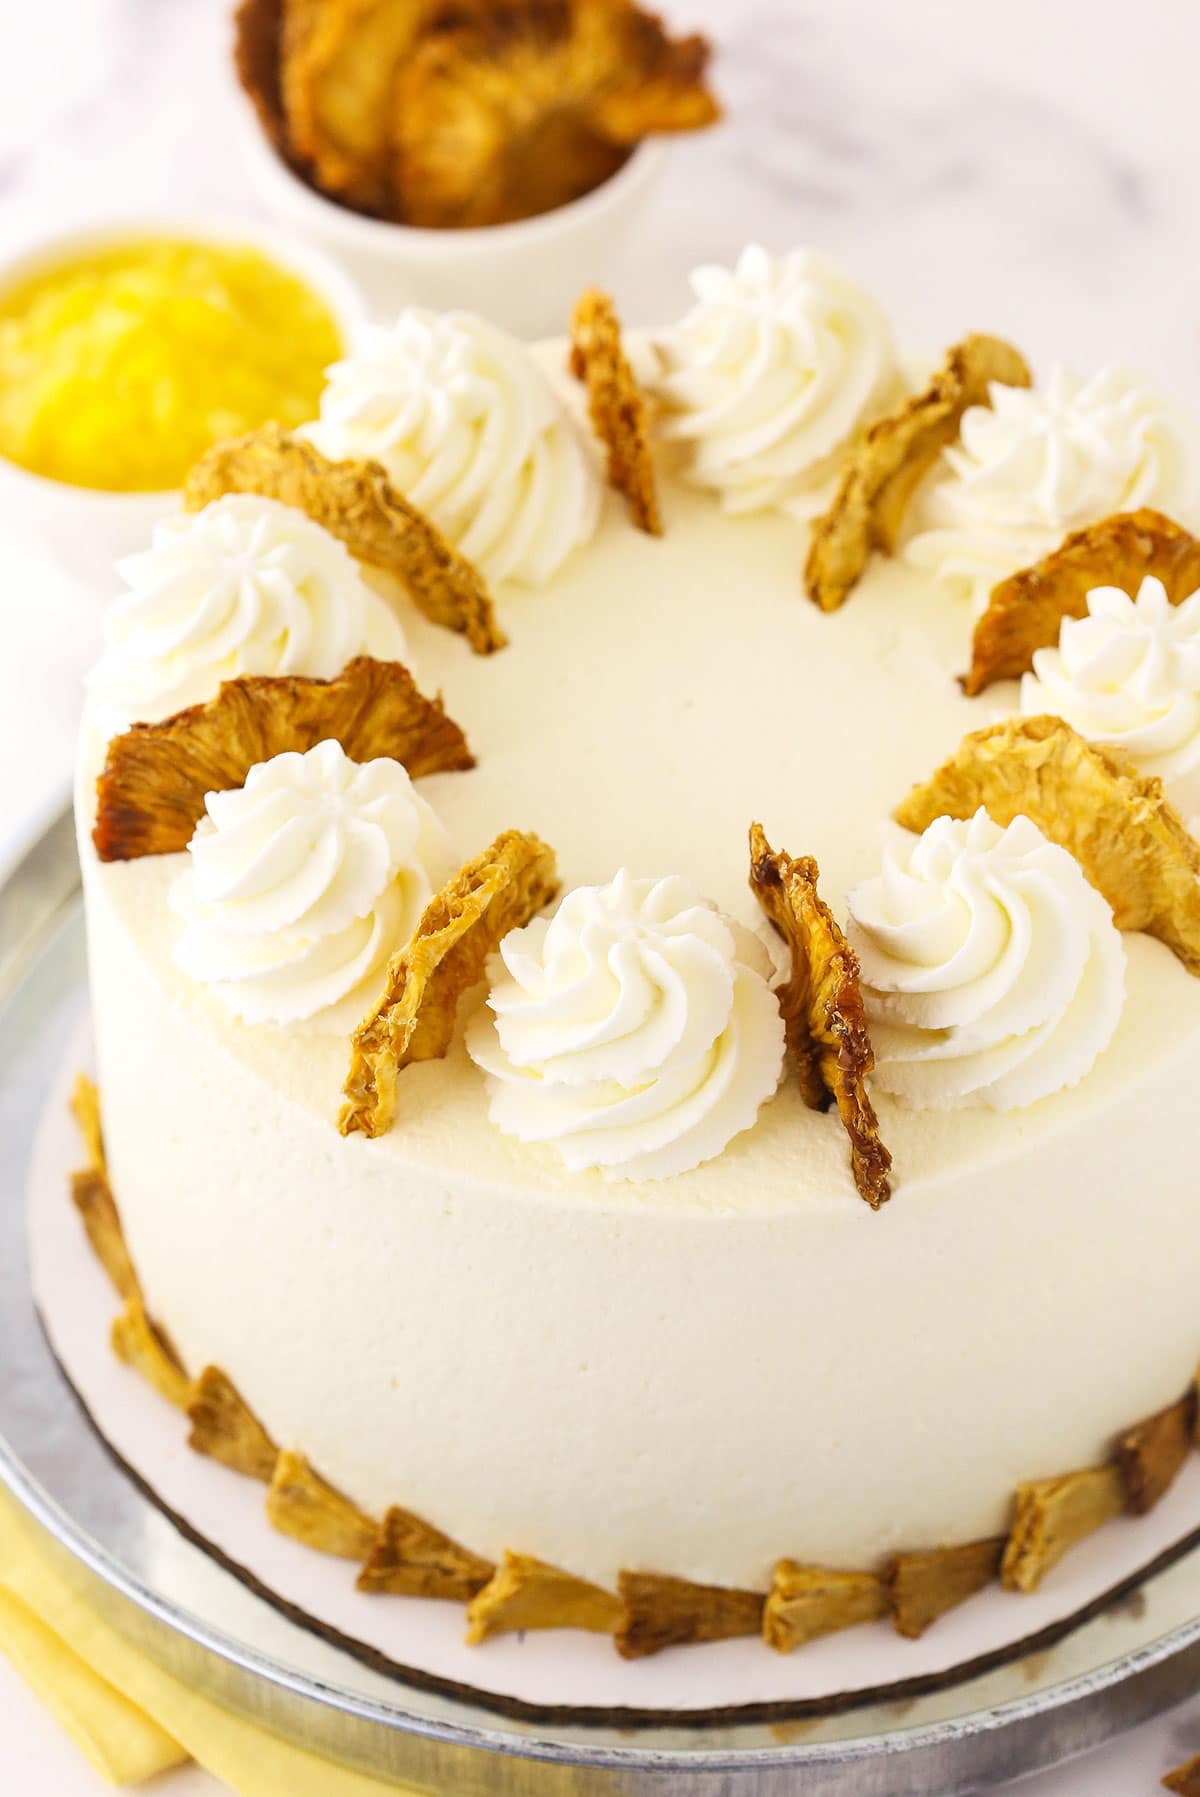 ഓവനില്ലാതെ രുചിയൂറും Almond Butterscotch Cake || ബട്ടർ സ്കോച്ച് കേക്ക് ||  Recipe : 195 - YouTube